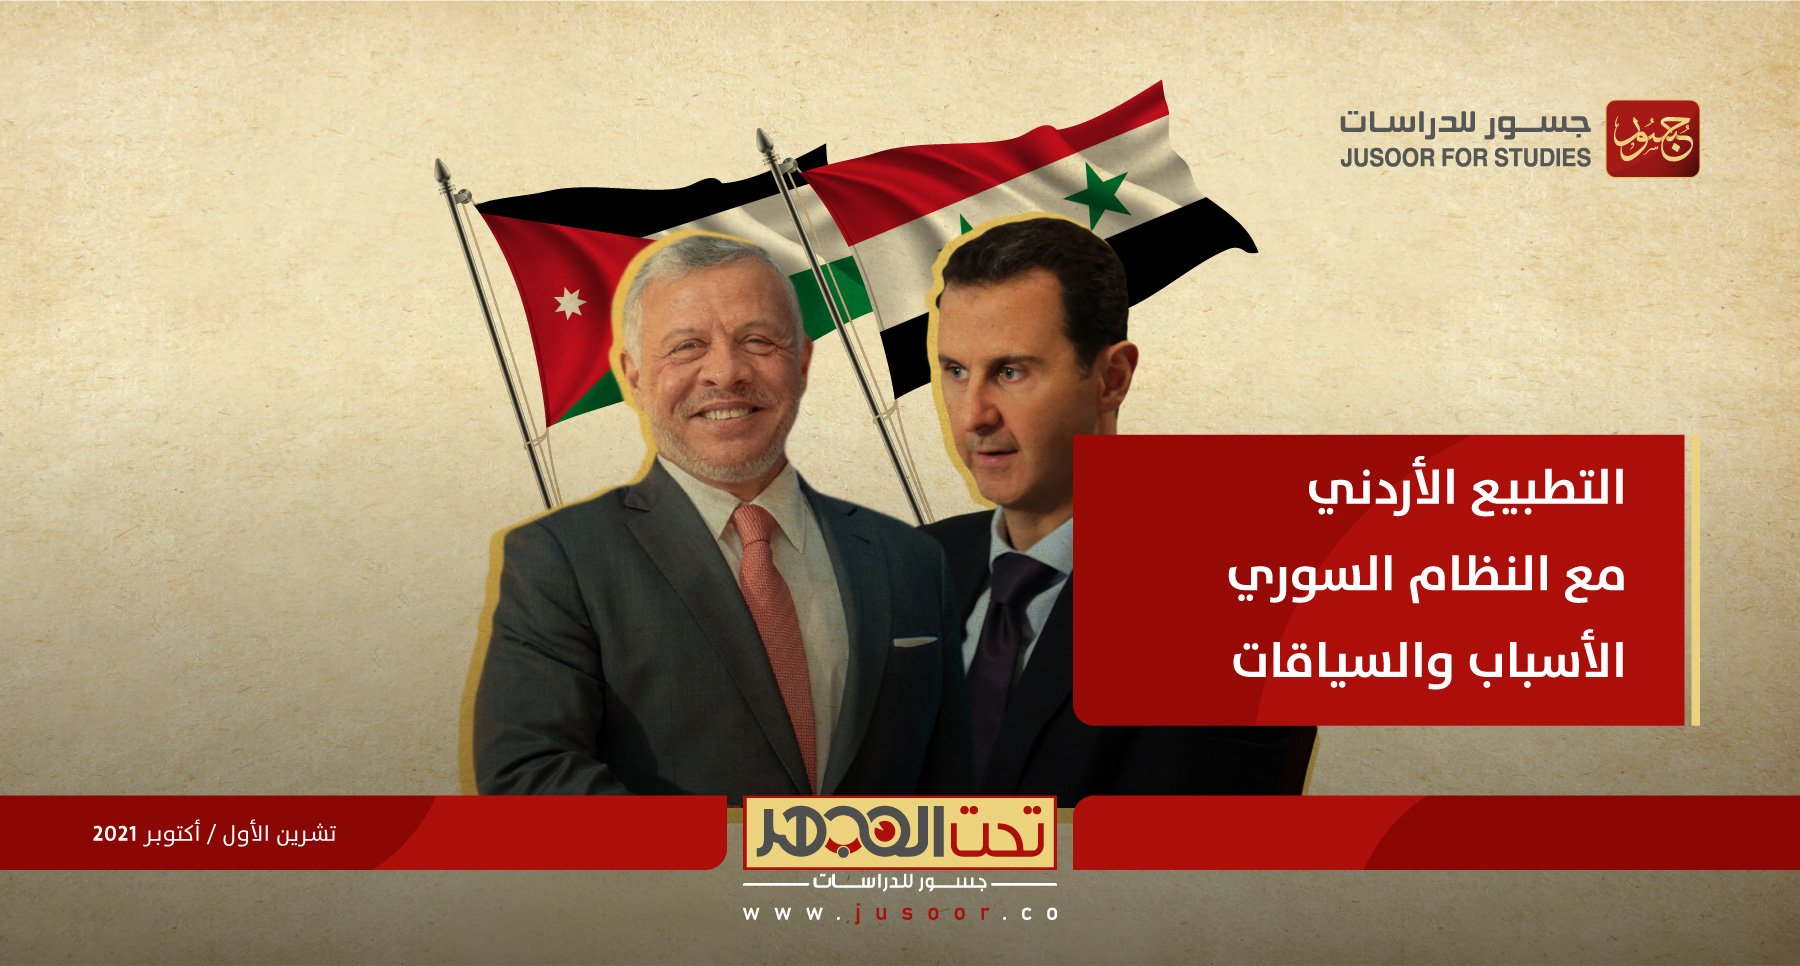 التطبيع الأردني مع النظام السوري: الأسباب والسياقات